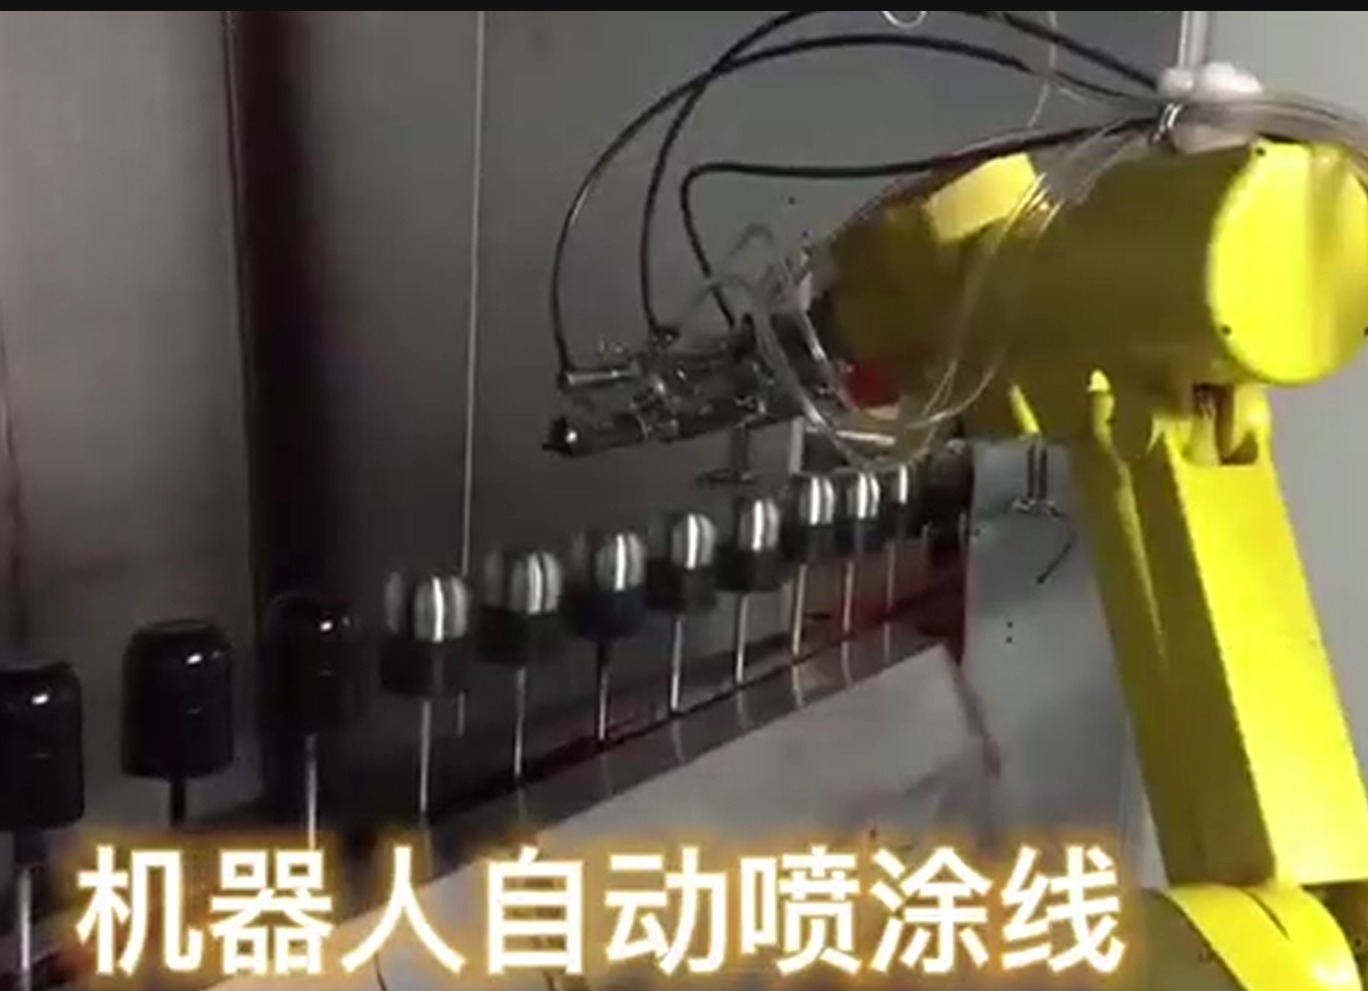 機器人噴涂線案例集，各行個也噴涂機器人生產線。